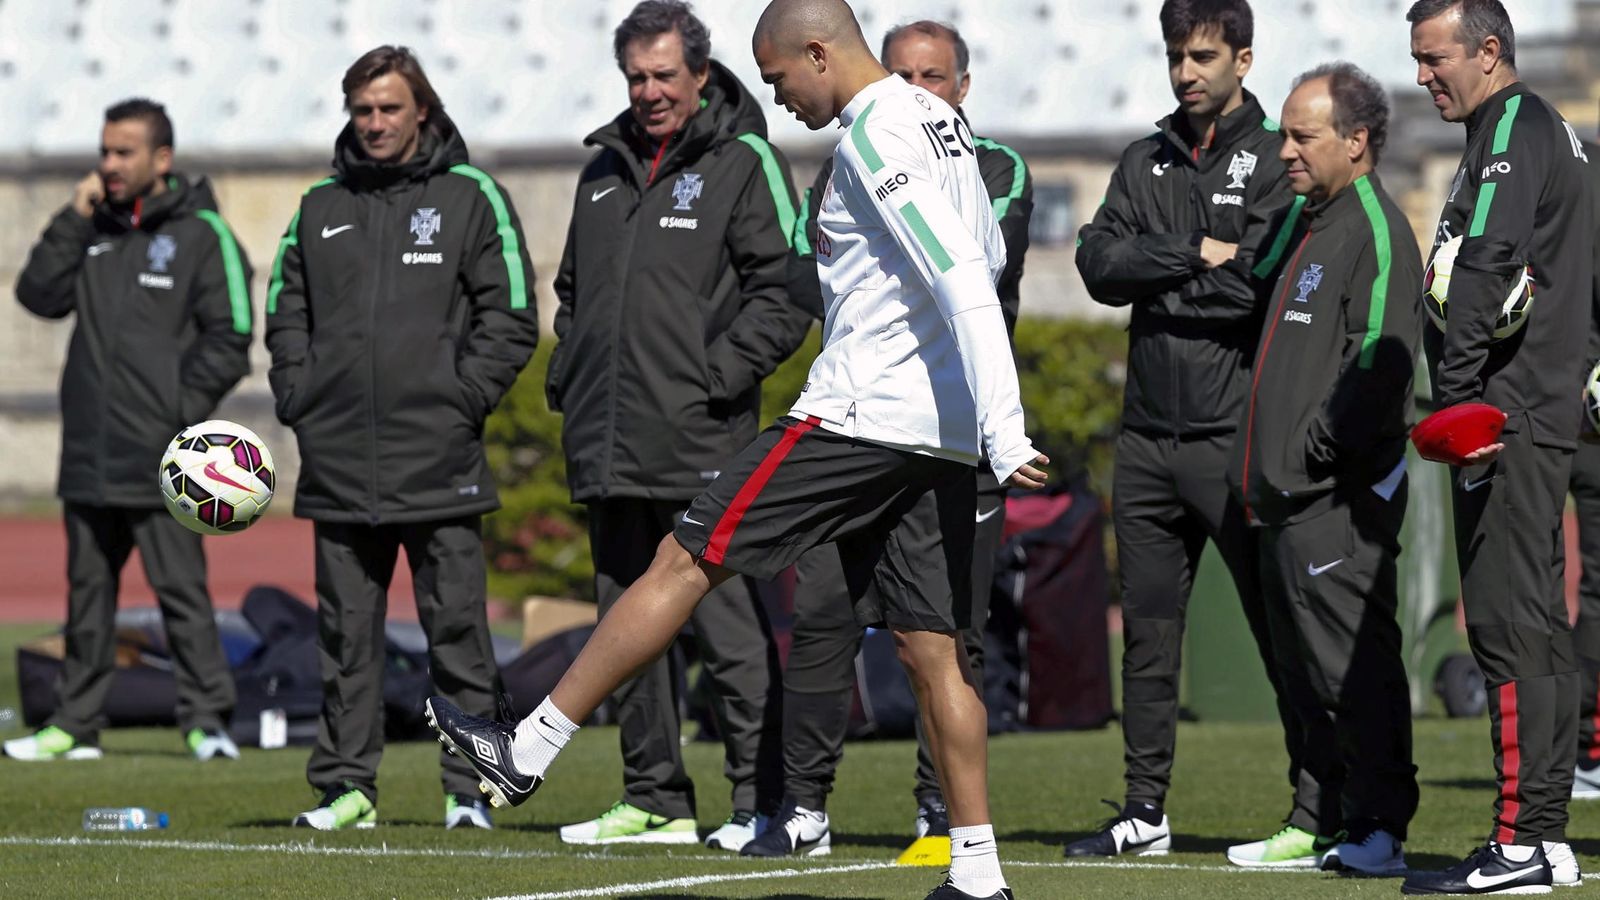 Foto: pepe, durante un entrenamiento de la selección portuguesa.